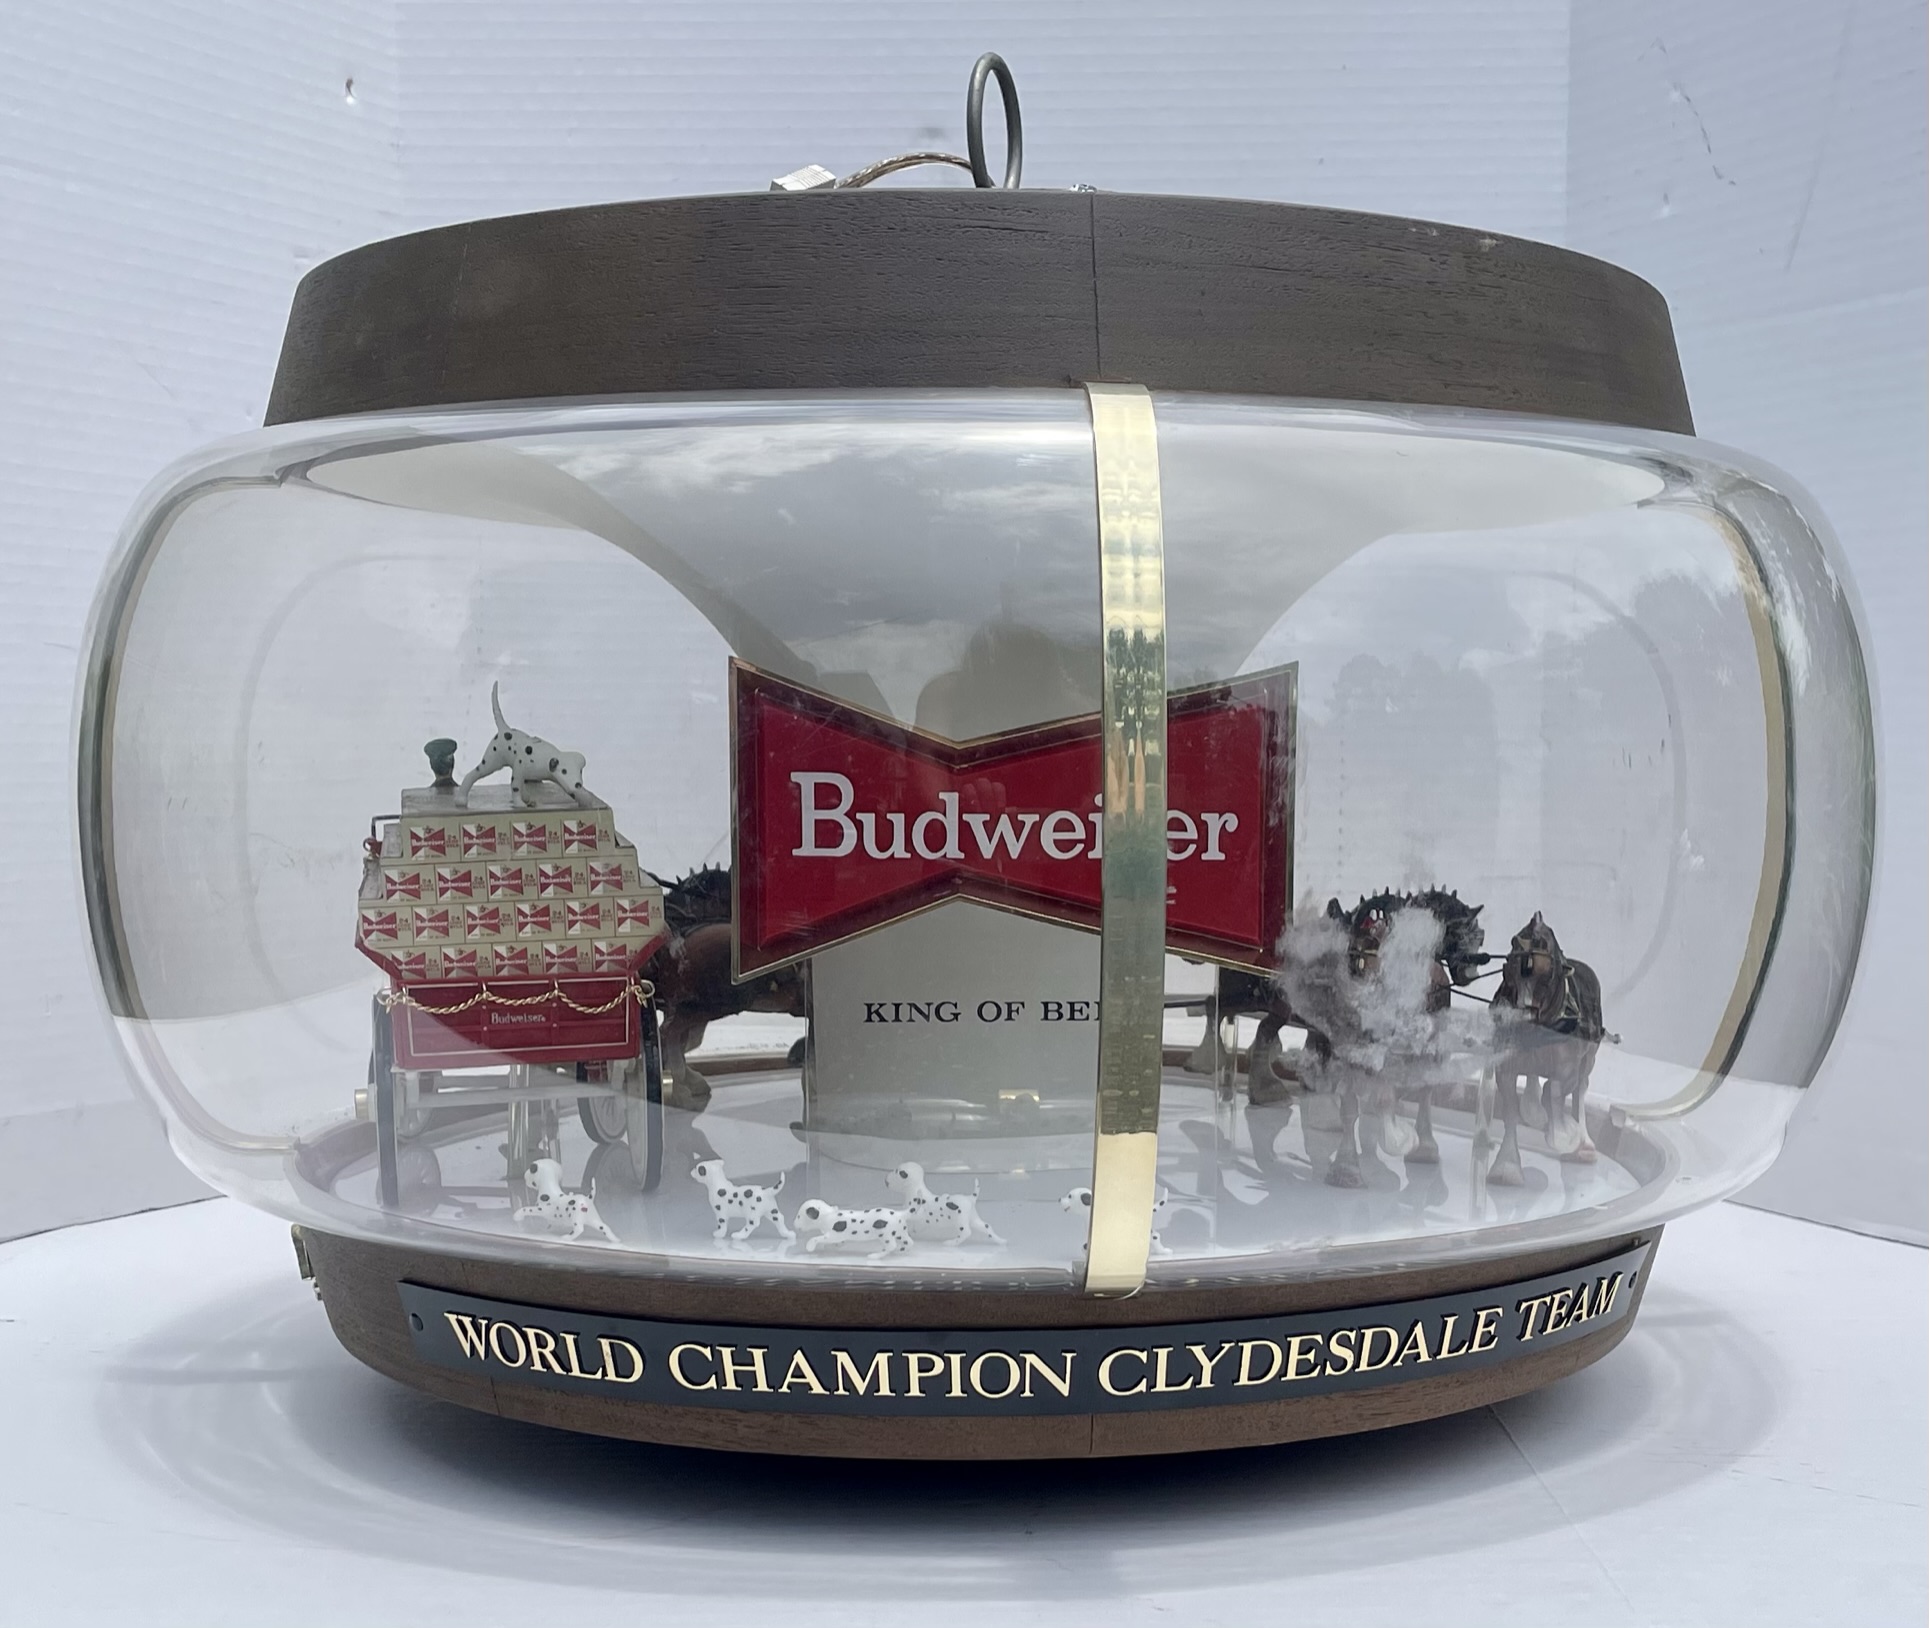 https://0201.nccdn.net/1_2/000/000/0bf/6a9/budweiser-clydesdale-team-globe-beer-sign.jpeg